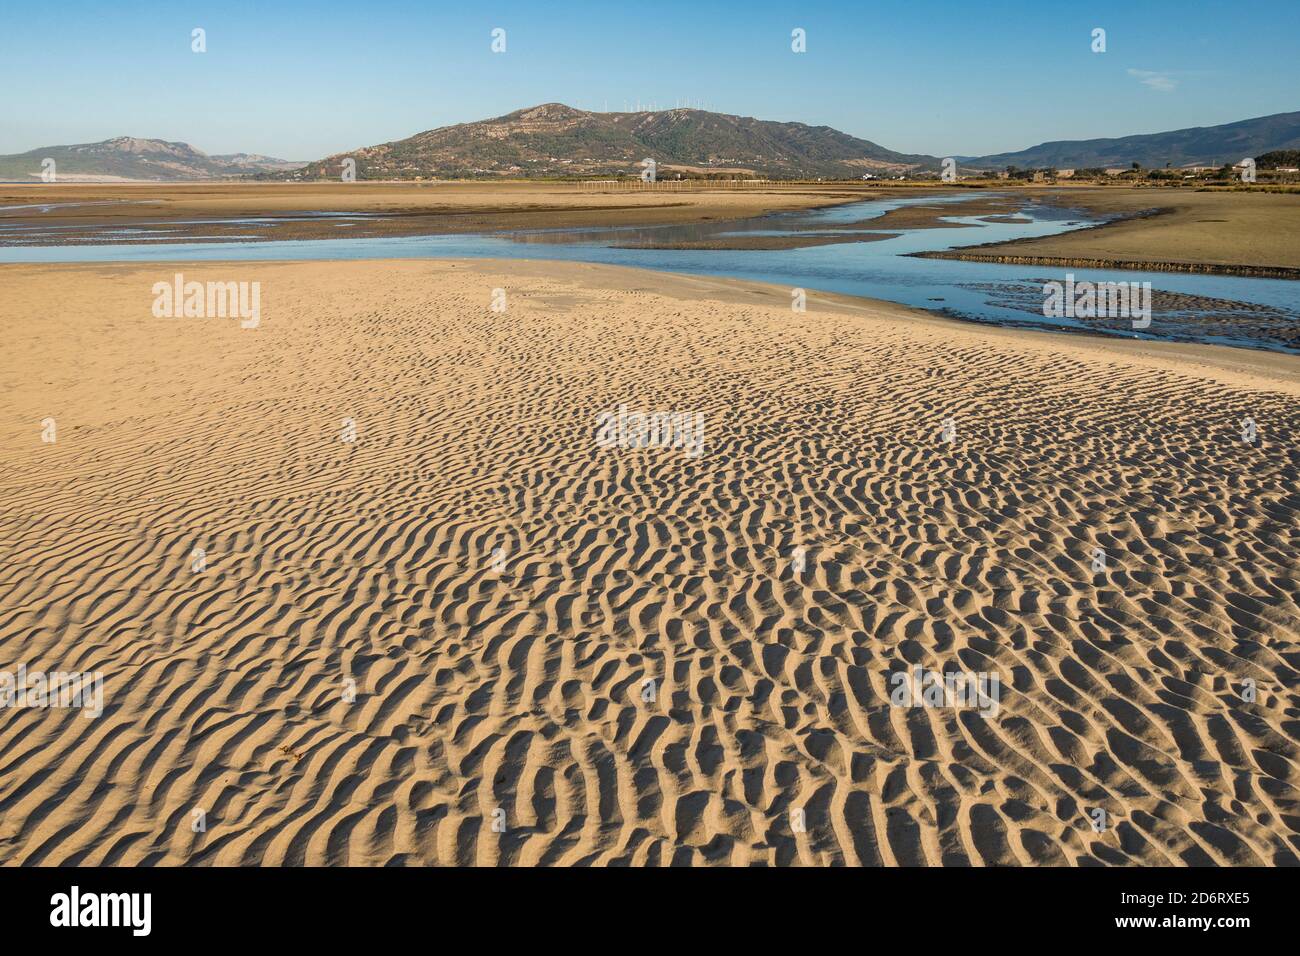 Playa de los lances, plage près de Tarifa avec la formation de lagons temporaires, Cadix, Costa de la Luz, Andalousie, Espagne. Banque D'Images